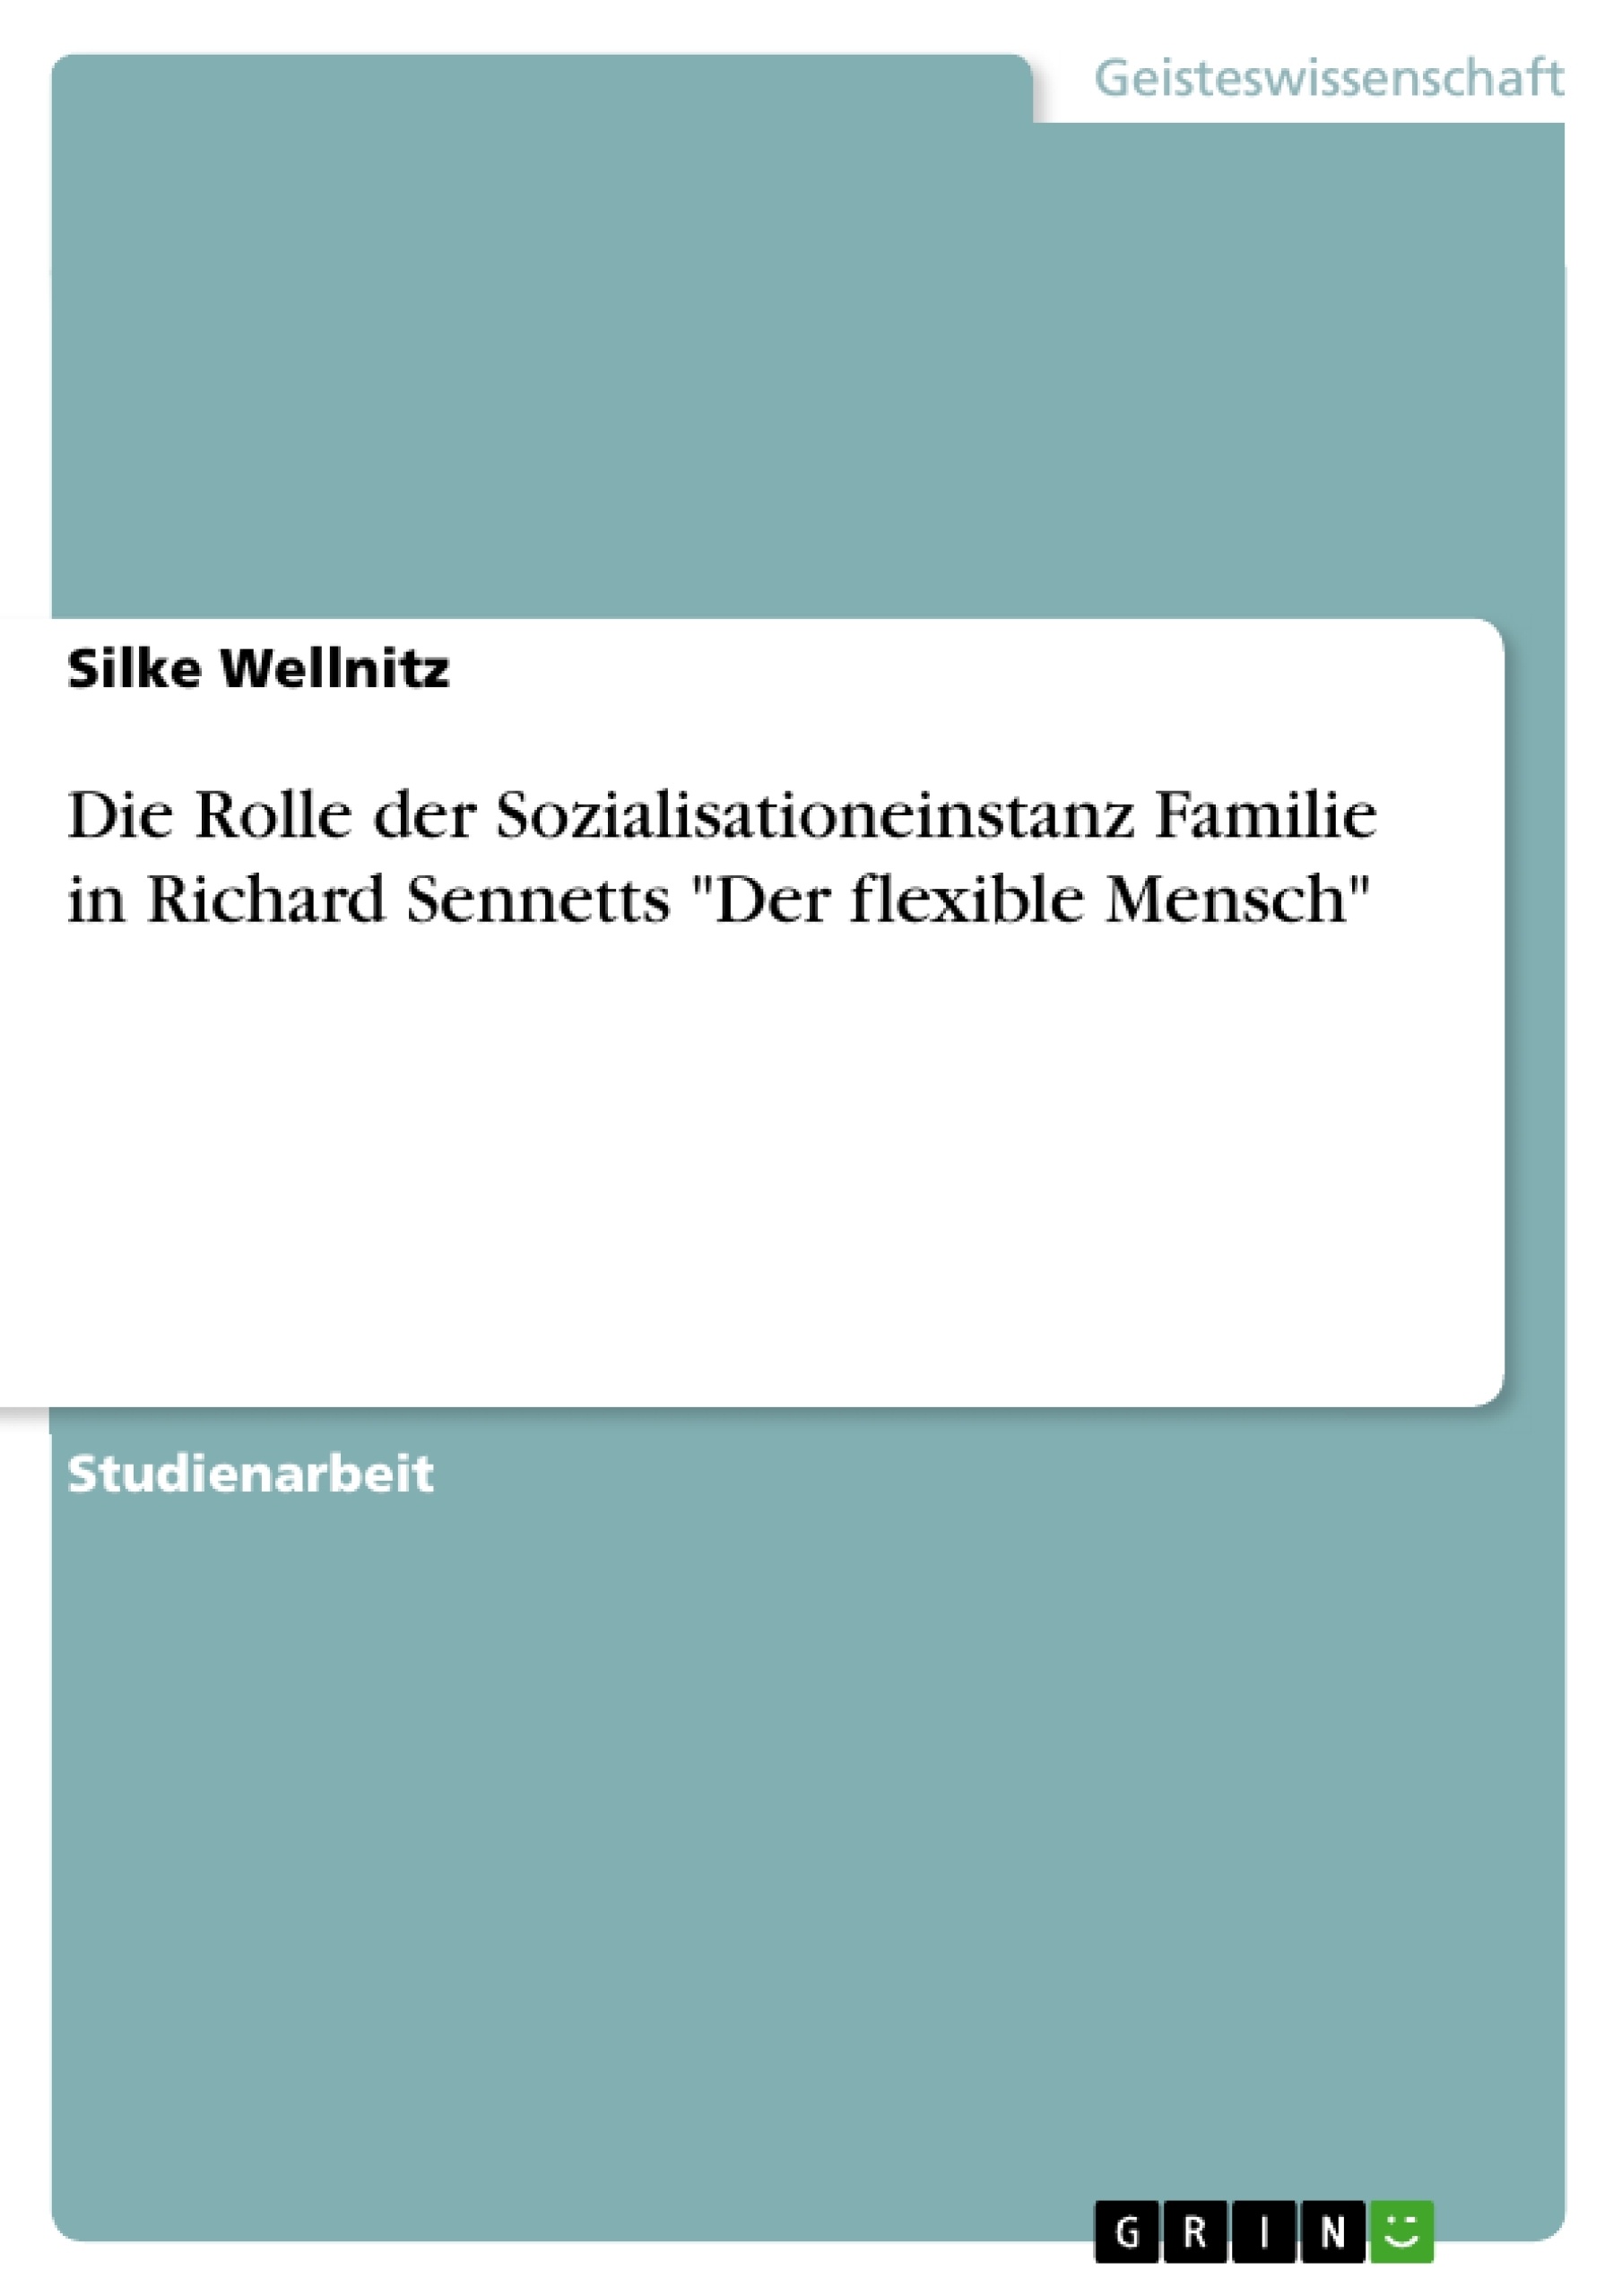 Title: Die Rolle der Sozialisationeinstanz Familie in Richard Sennetts "Der flexible Mensch"